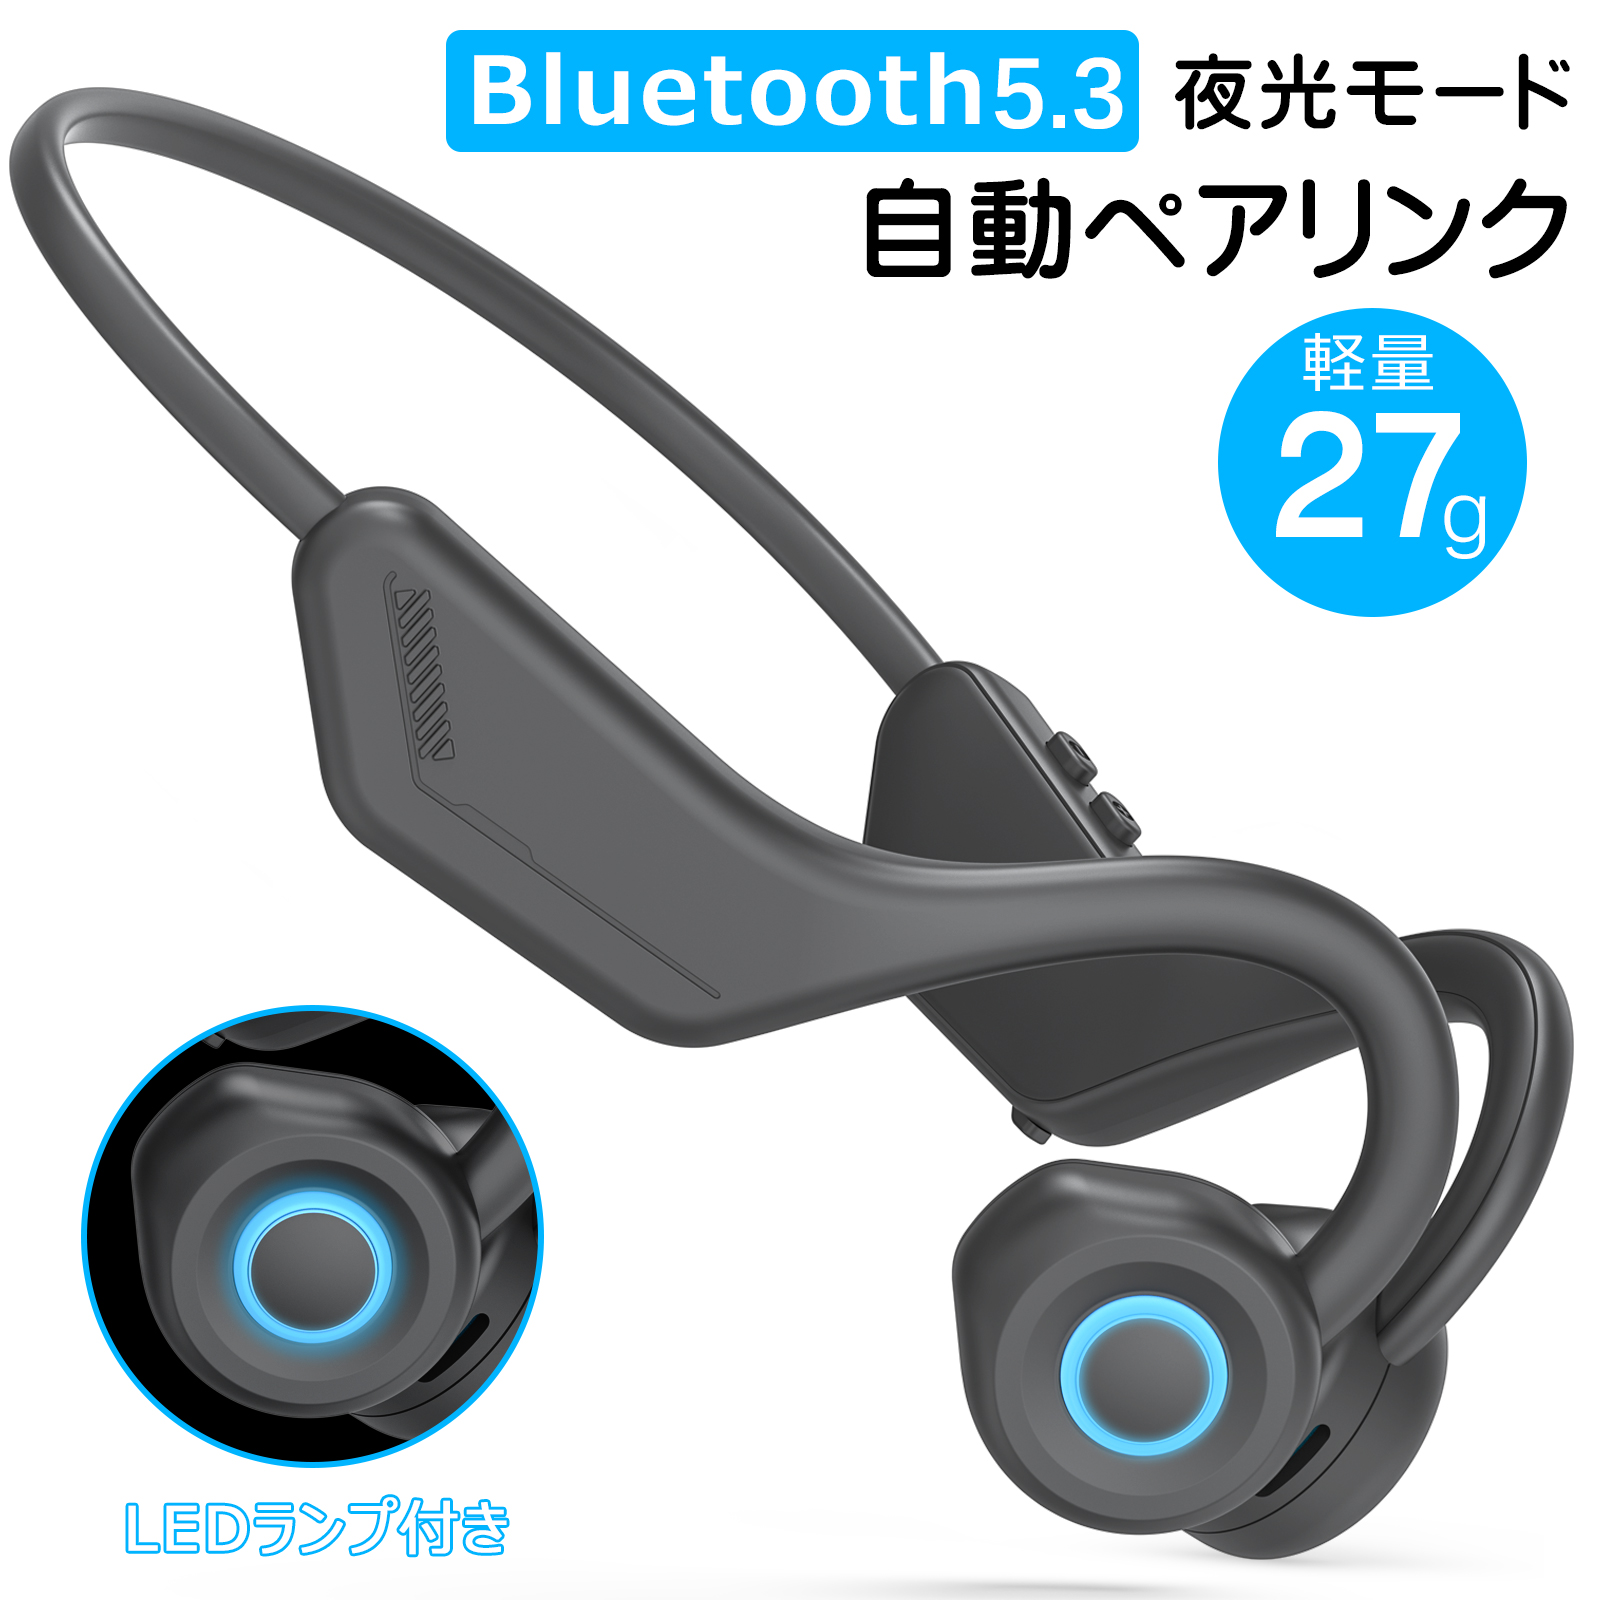 空気伝導イヤホン Bluetooth ヘッドセット 軽量27g 2台ペアリンク Type-C オープンイヤー 日本語音声ガイド 送料無料 父の日 プレゼント